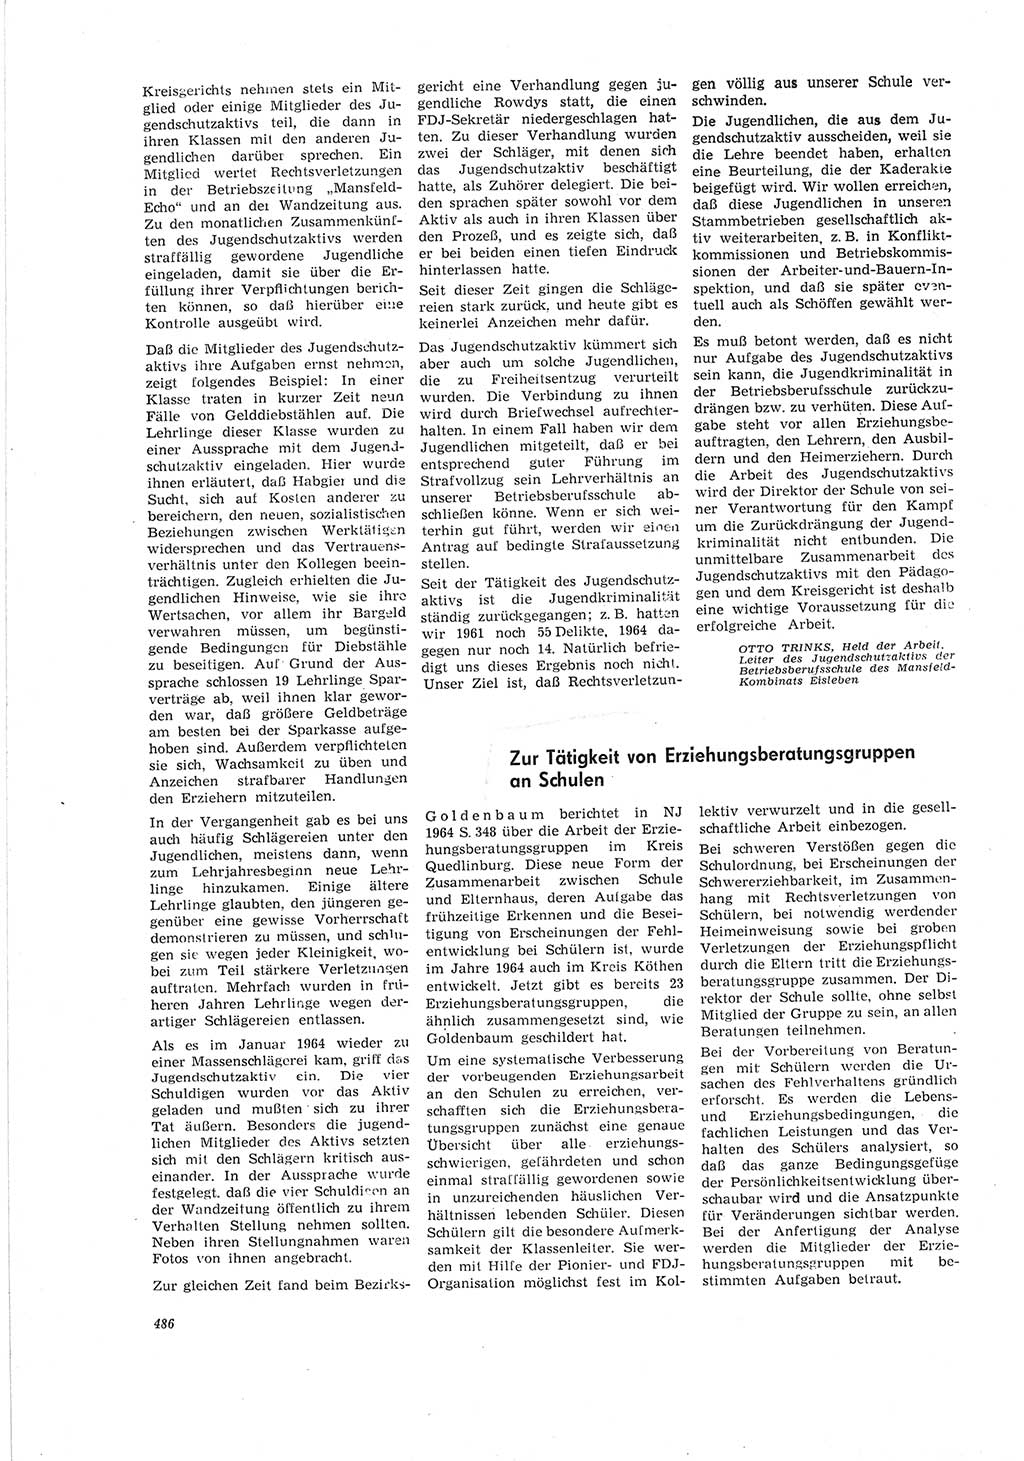 Neue Justiz (NJ), Zeitschrift für Recht und Rechtswissenschaft [Deutsche Demokratische Republik (DDR)], 19. Jahrgang 1965, Seite 486 (NJ DDR 1965, S. 486)